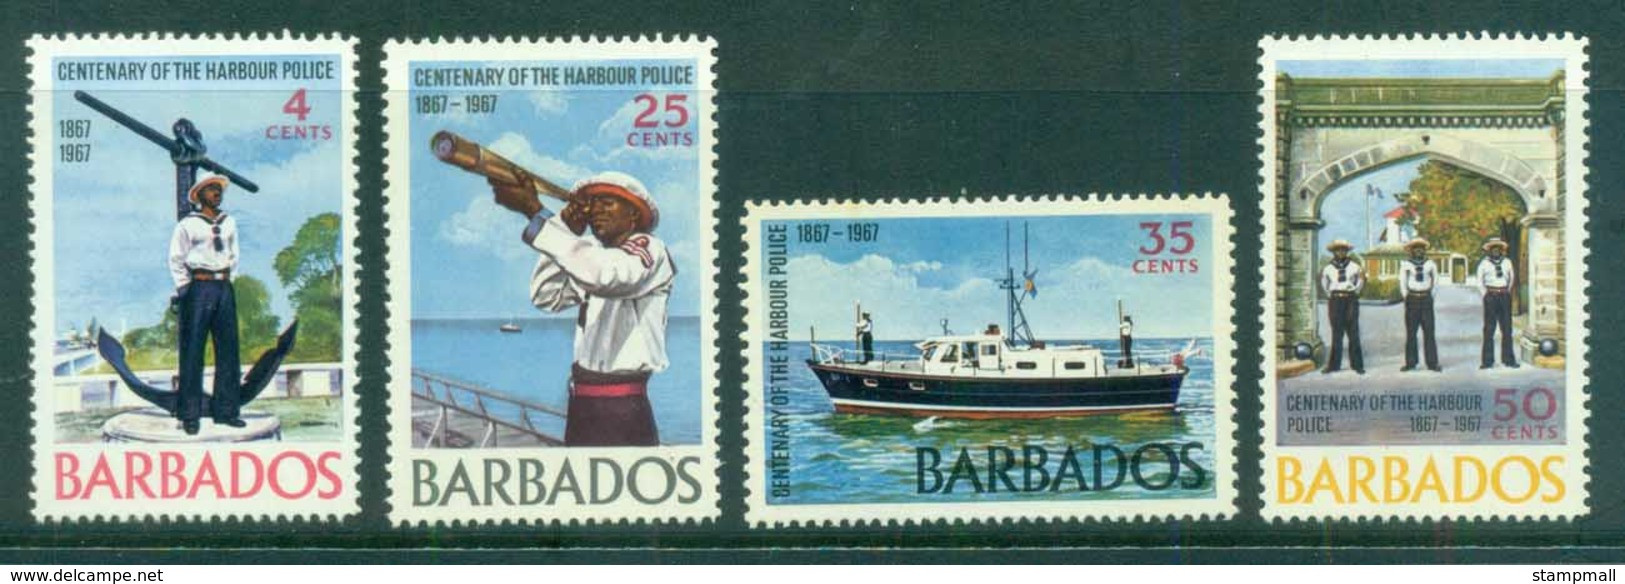 Barbados 1967 Bridgetown Harbour Police MUH - Barbados (1966-...)